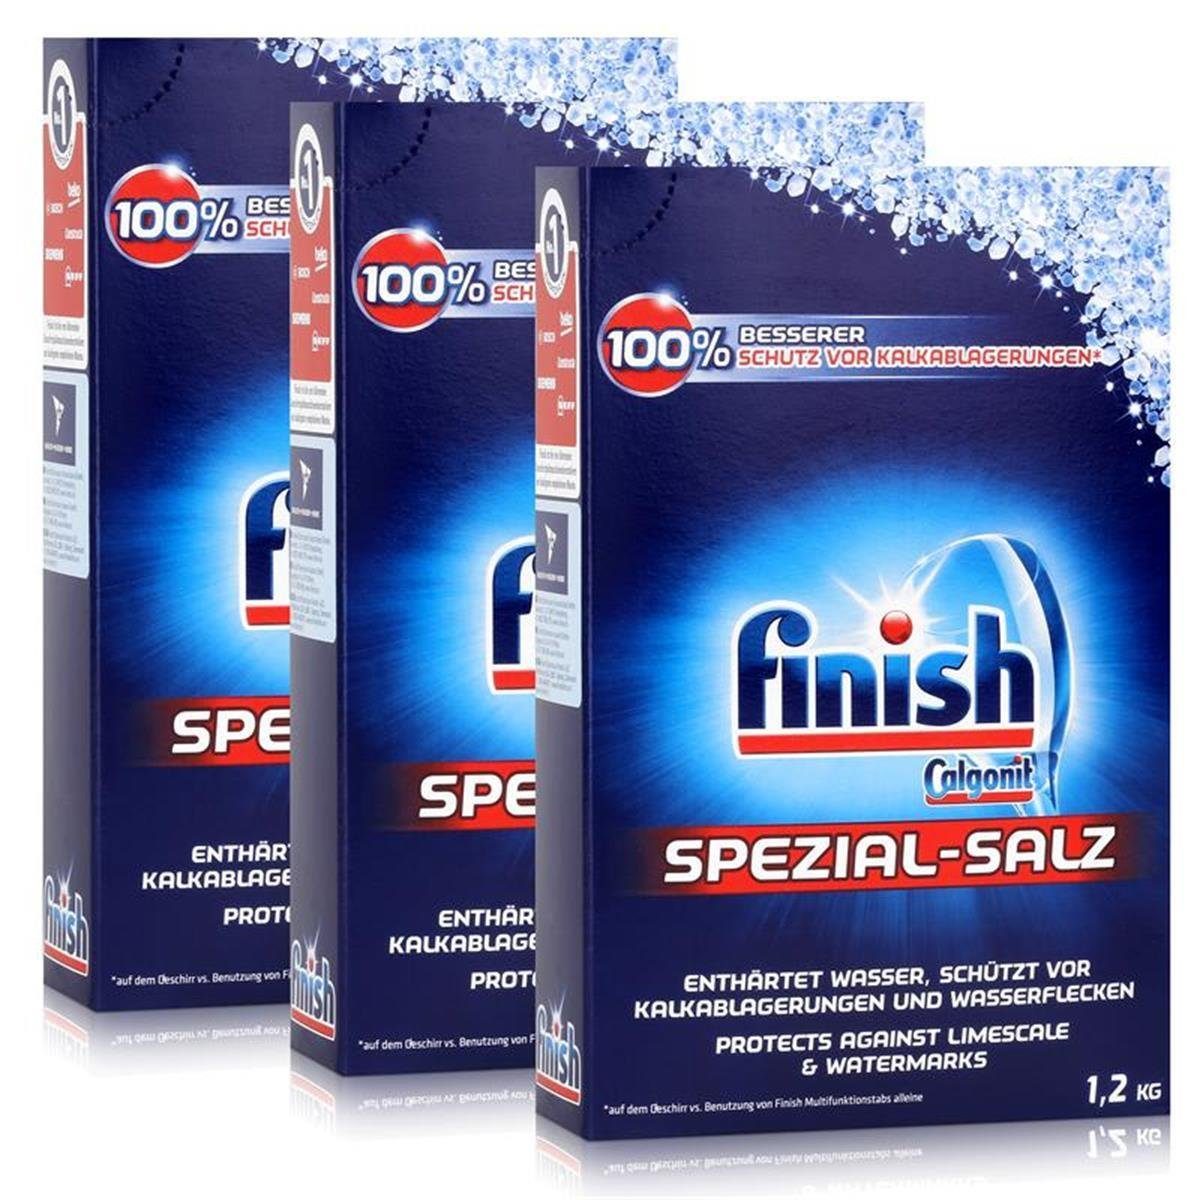 FINISH Calgonit Finish Spülmaschinen Spezial-Salz 1,2kg – Enthärtet Wasser (3 Spülmaschinenreiniger